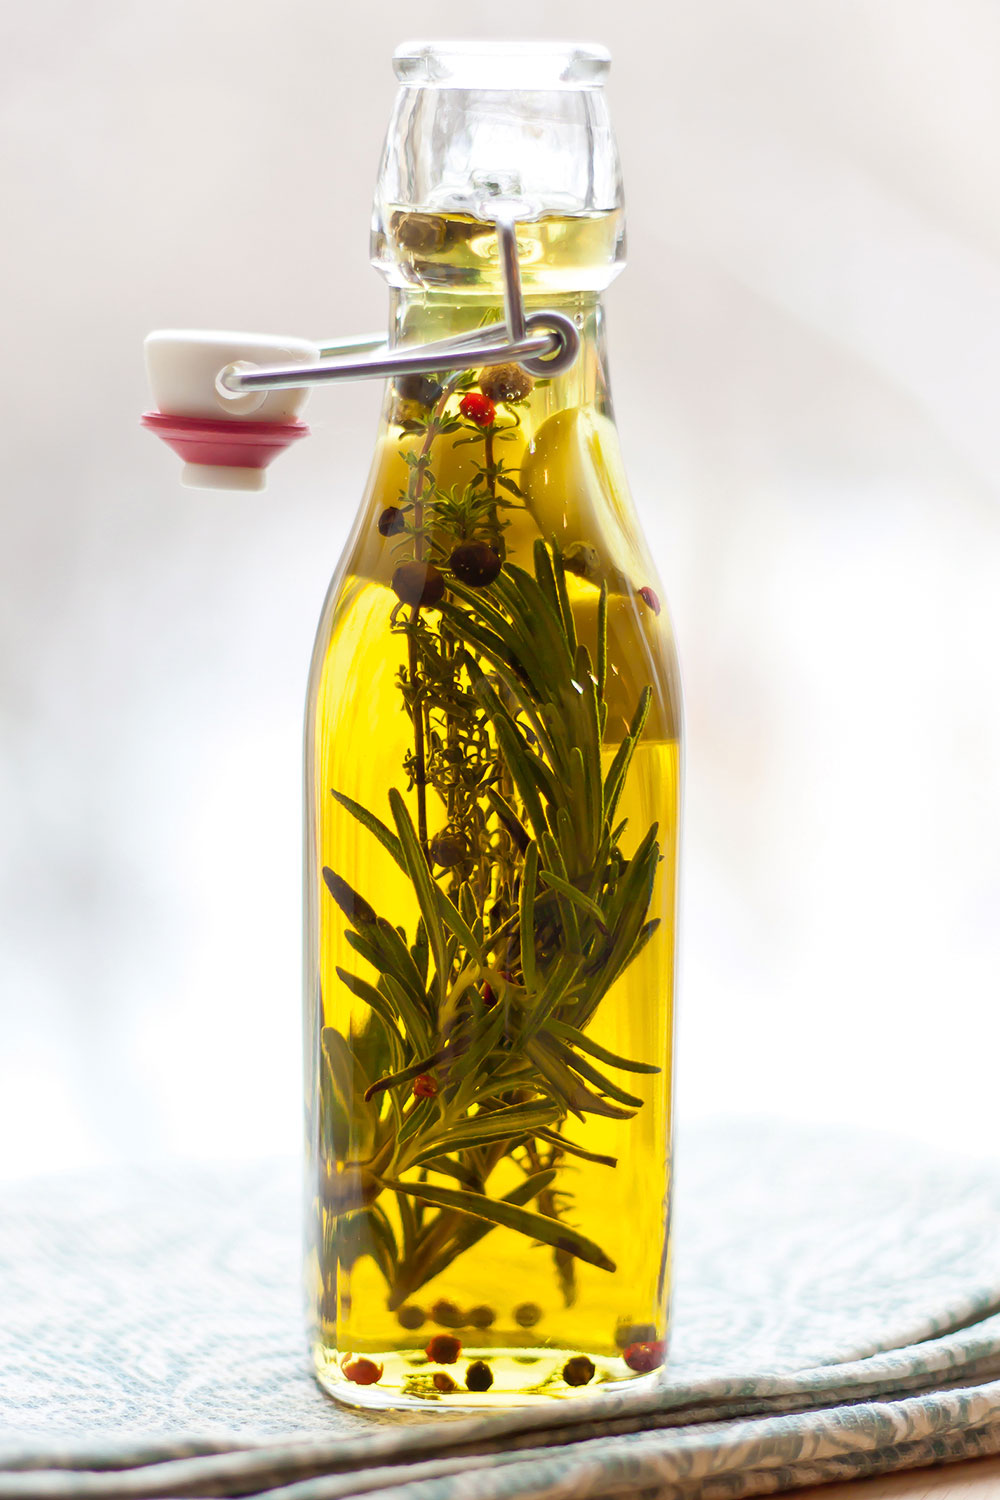 Bylinkové oleje. Nakladanie do oleja sa používa najmä pri aromatických bylinkách, ako je napríklad levanduľa, šalvia, oregano či rozmarín. Umyté bylinky stačí vložiť do fľašky z tmavého skla, zaliať ich kvalitným olivovým olejom, uzavrieť a nechať lúhovať asi tri týždne na chladnom a tmavom mieste. Občasne zmes premiešavajte a nakoniec preceďte.